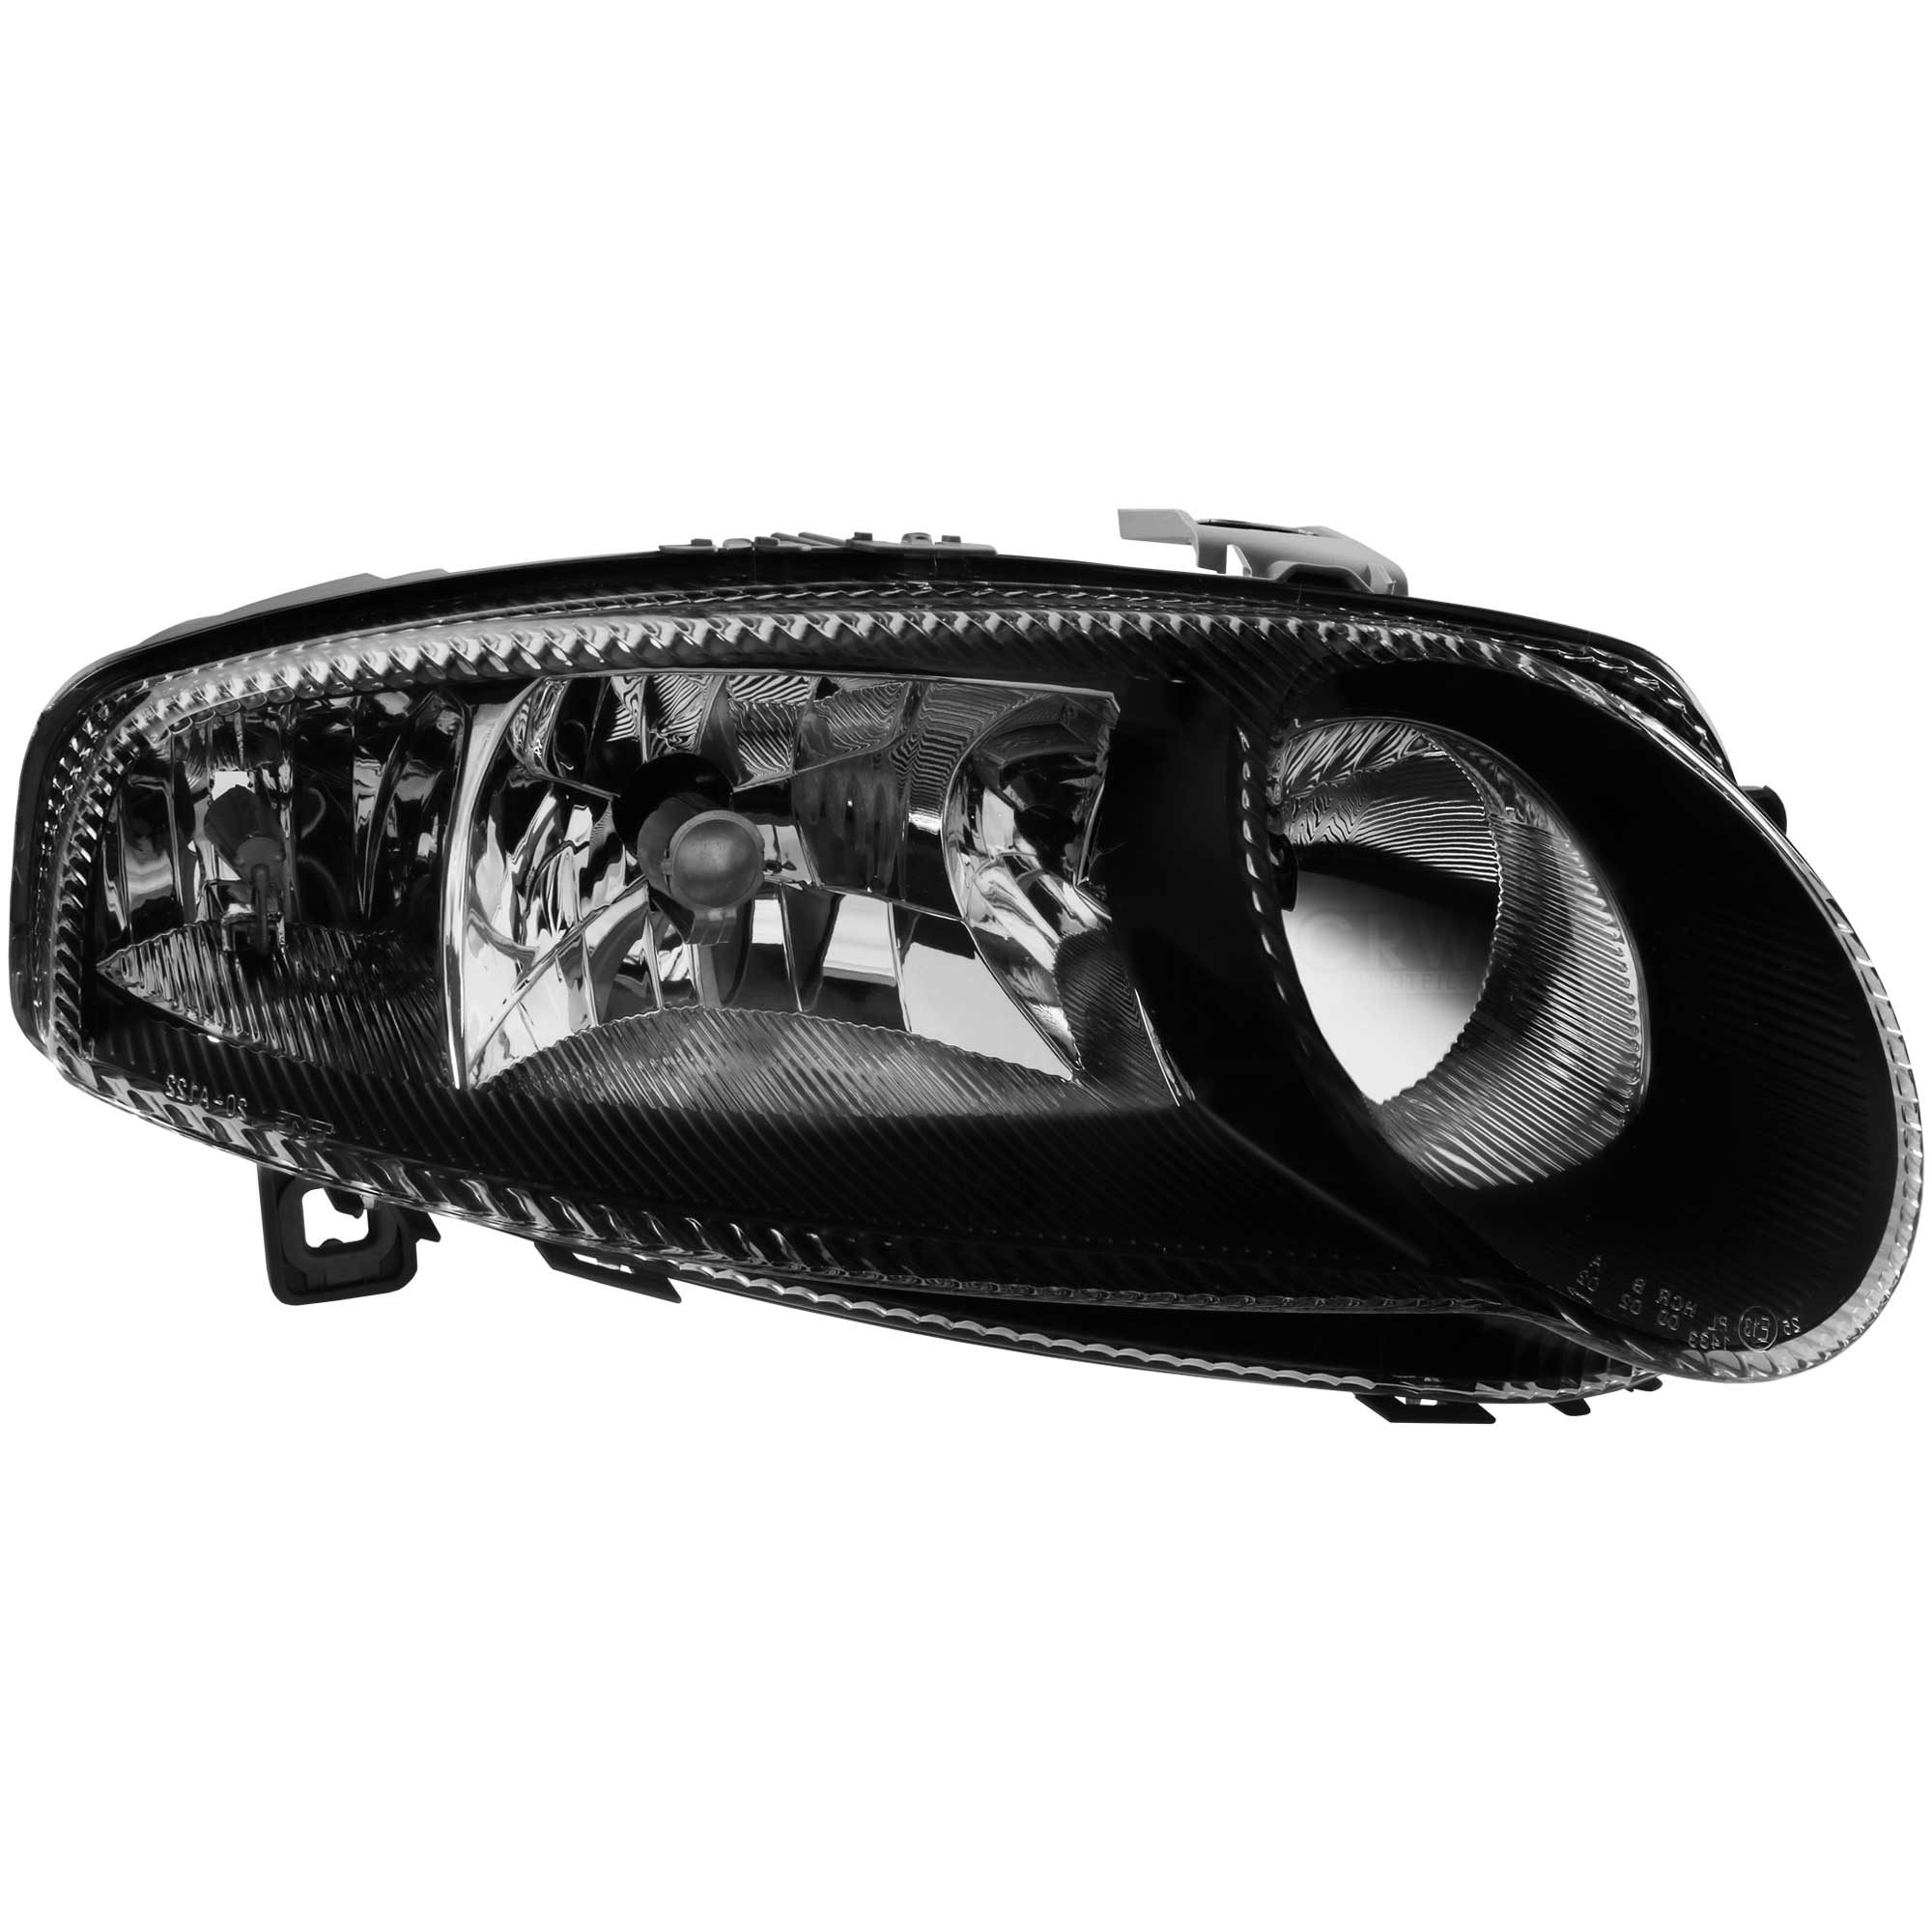 Hauptscheinwerfer rechts H7/H1/H7 schwarz glasklar für Alfa Romeo 147 937 1.6